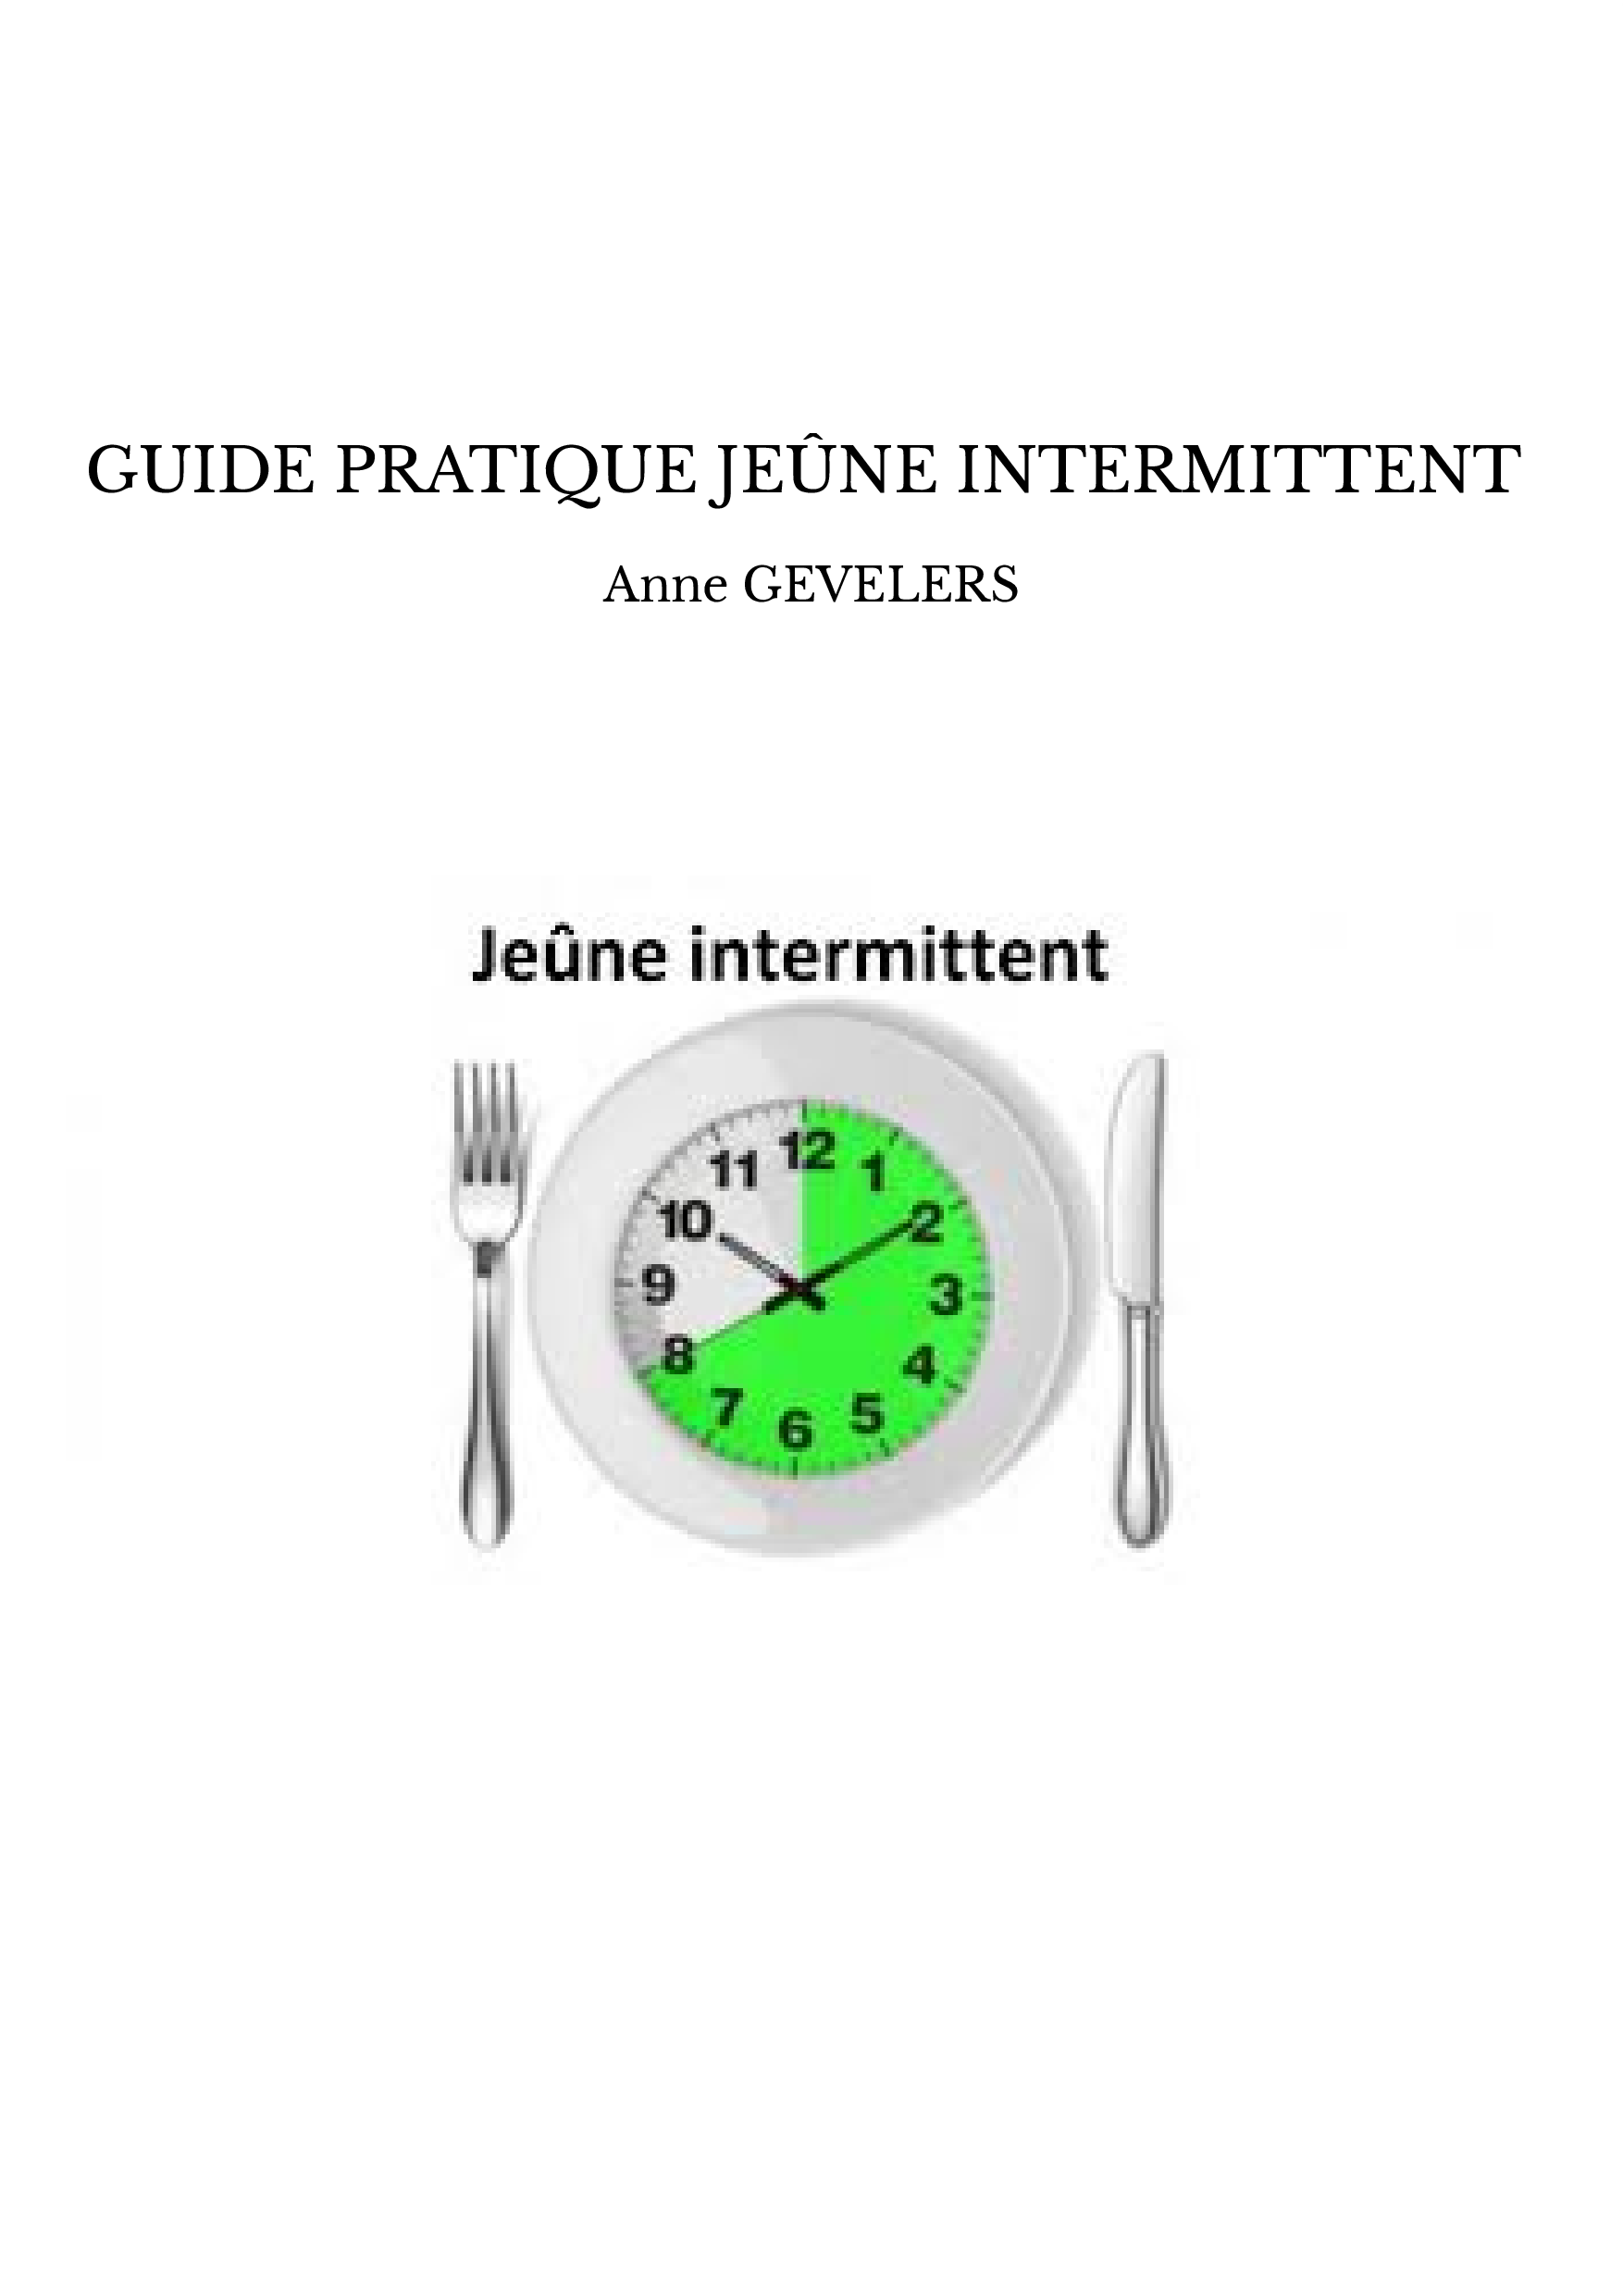 GUIDE PRATIQUE JEÛNE INTERMITTENT - ANNE GEVELERS